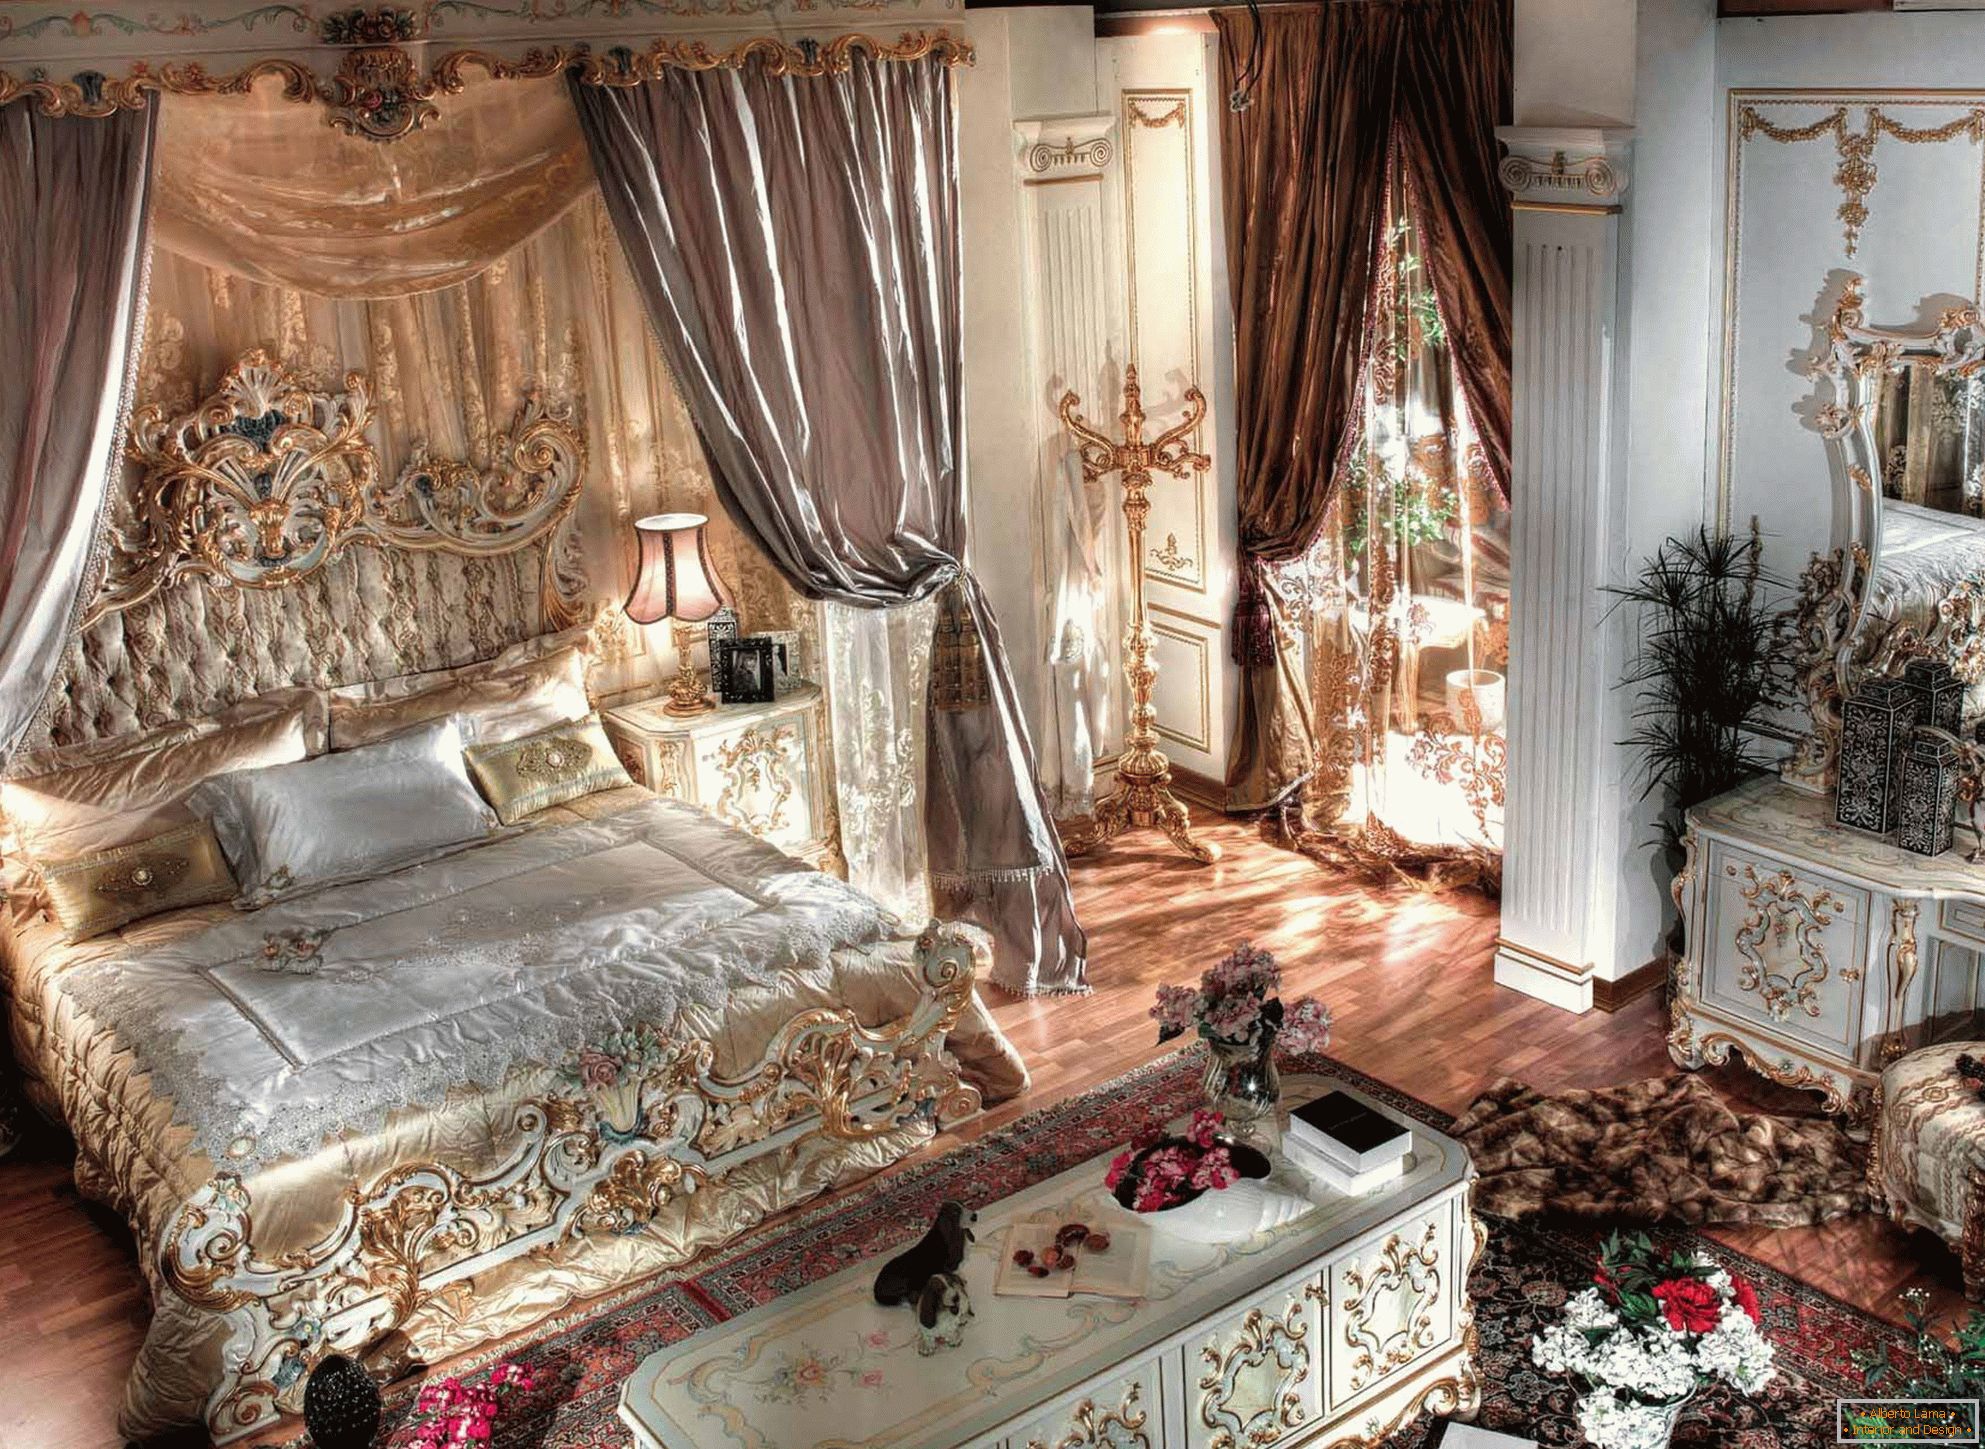 Luxueuse chambre baroque avec de hauts plafonds. Au centre de la composition se trouve un lit massif en bois à dos sculpté.